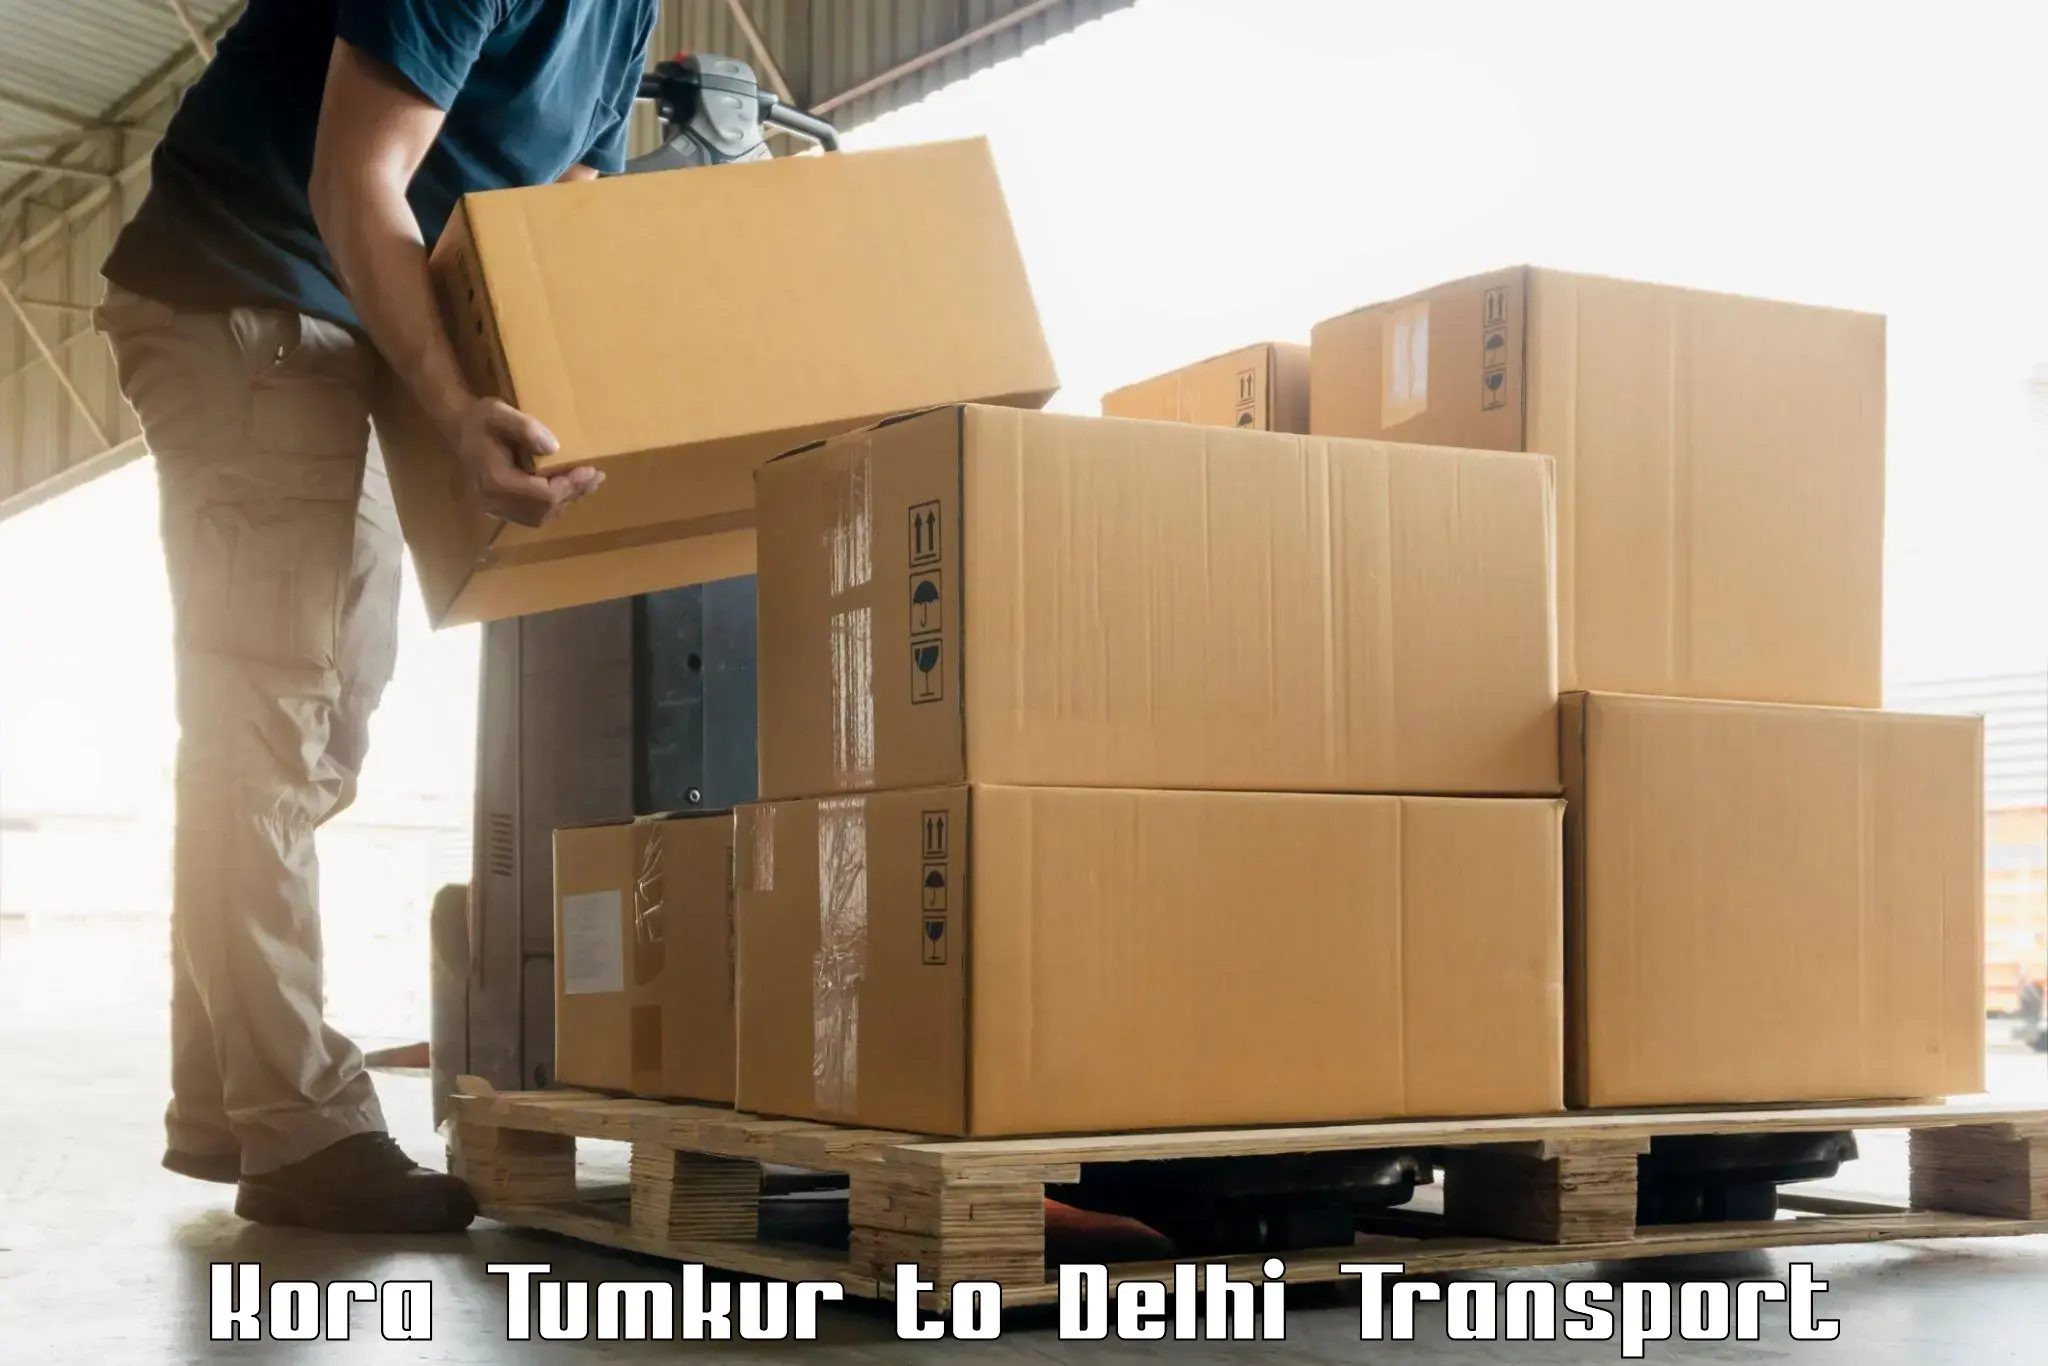 Pick up transport service in Kora Tumkur to Kalkaji